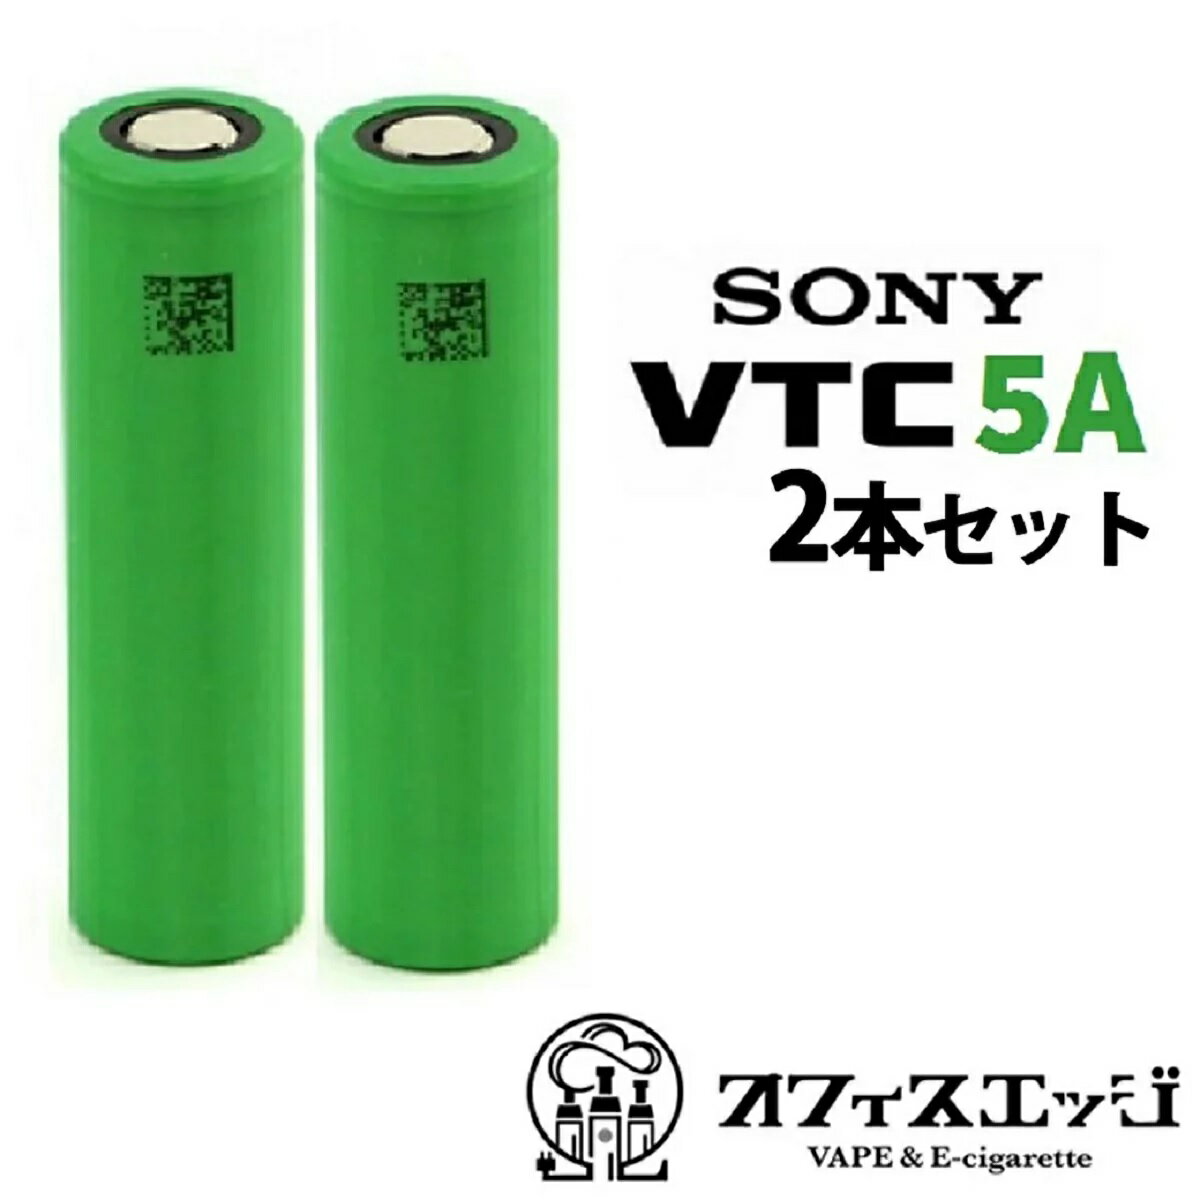 VTC5A MURATA ◇2本セット◇2600mAh 30A 18650フラットトップ バッテリー 電池 電子タバコ ベイプ vape vtc battery 電池 充電池 vtc5a [D-36]